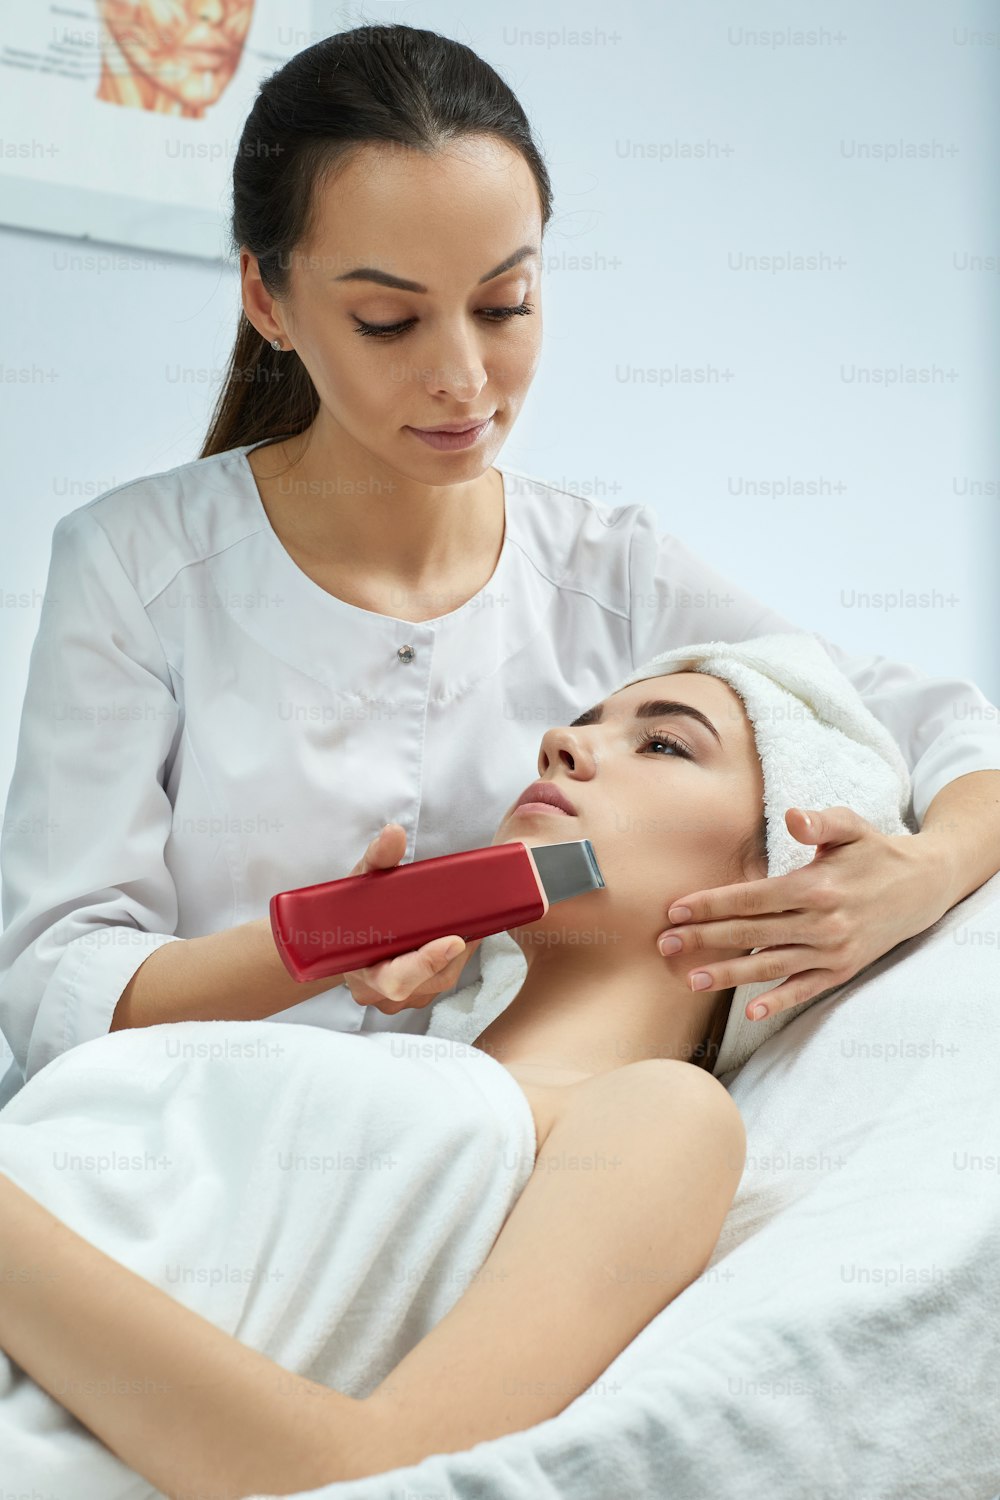 procedimento de limpeza de ultrassom do rosto da mulher, peeling facial. tratamento ultra-sônico